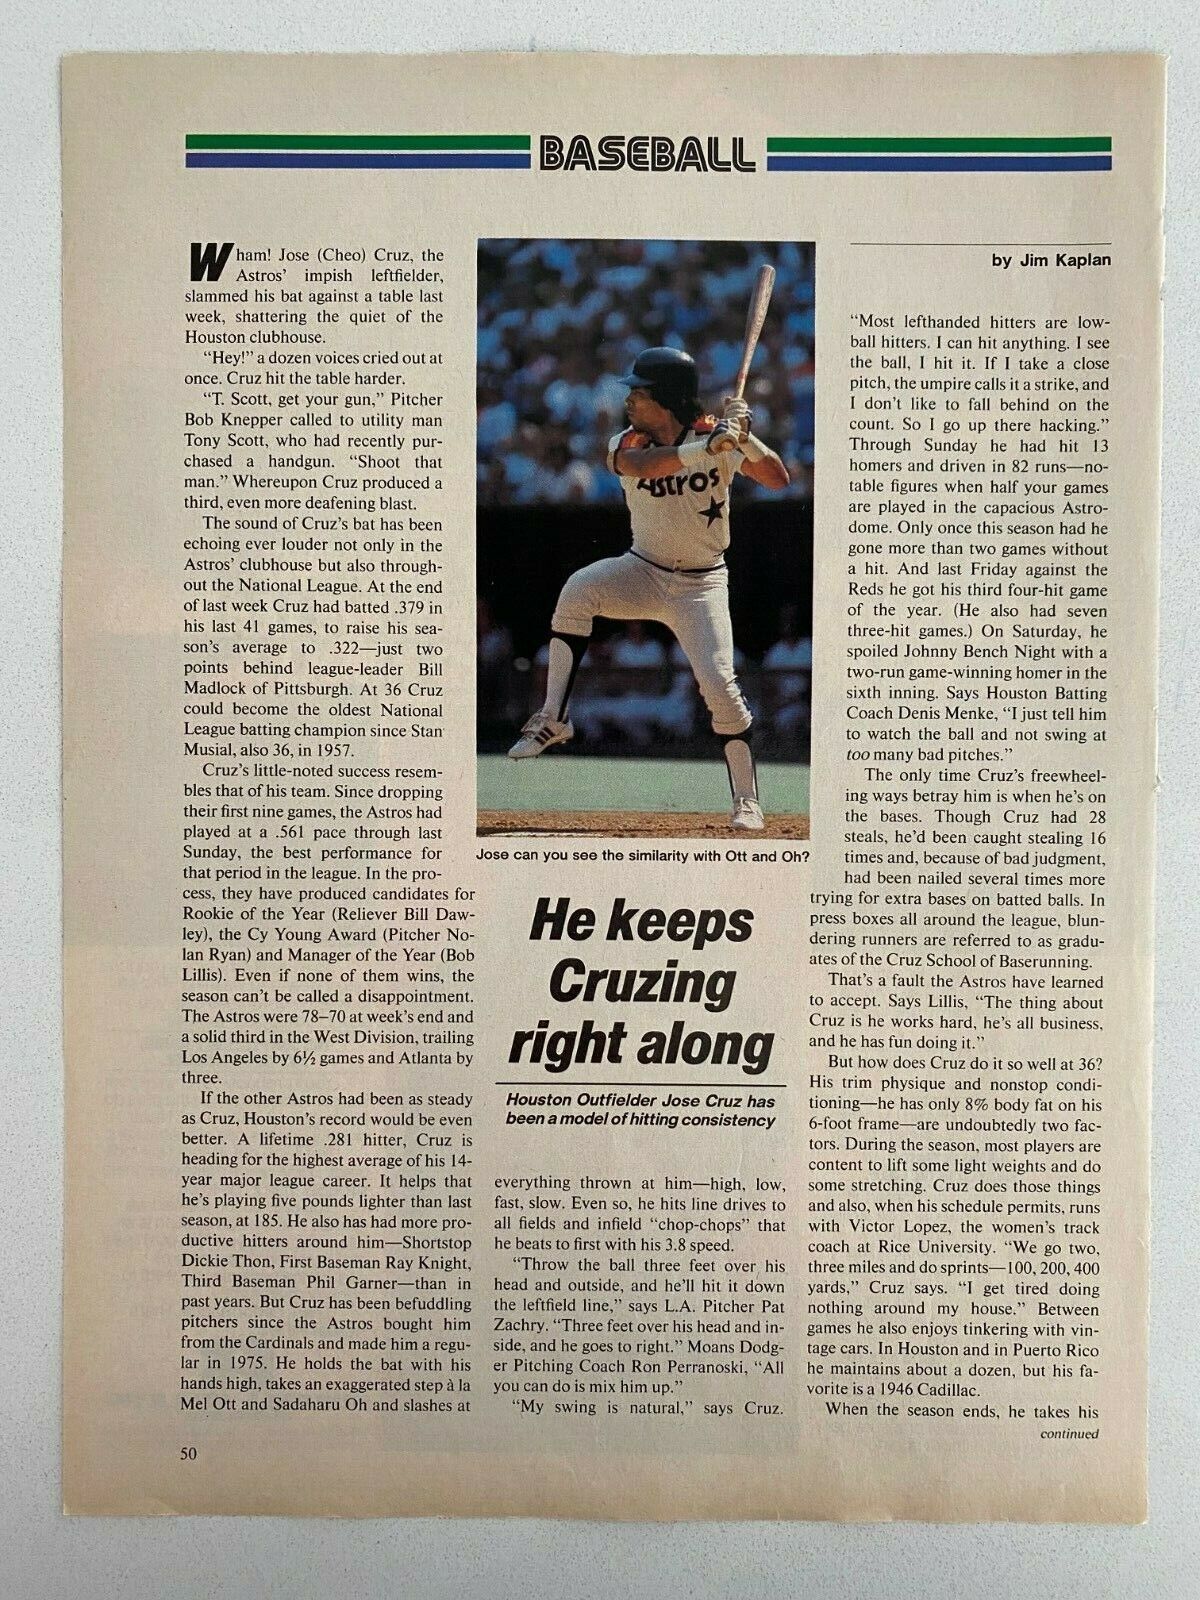 Jose Cruz Houston Astros Vintage 1983 Magazine Photo